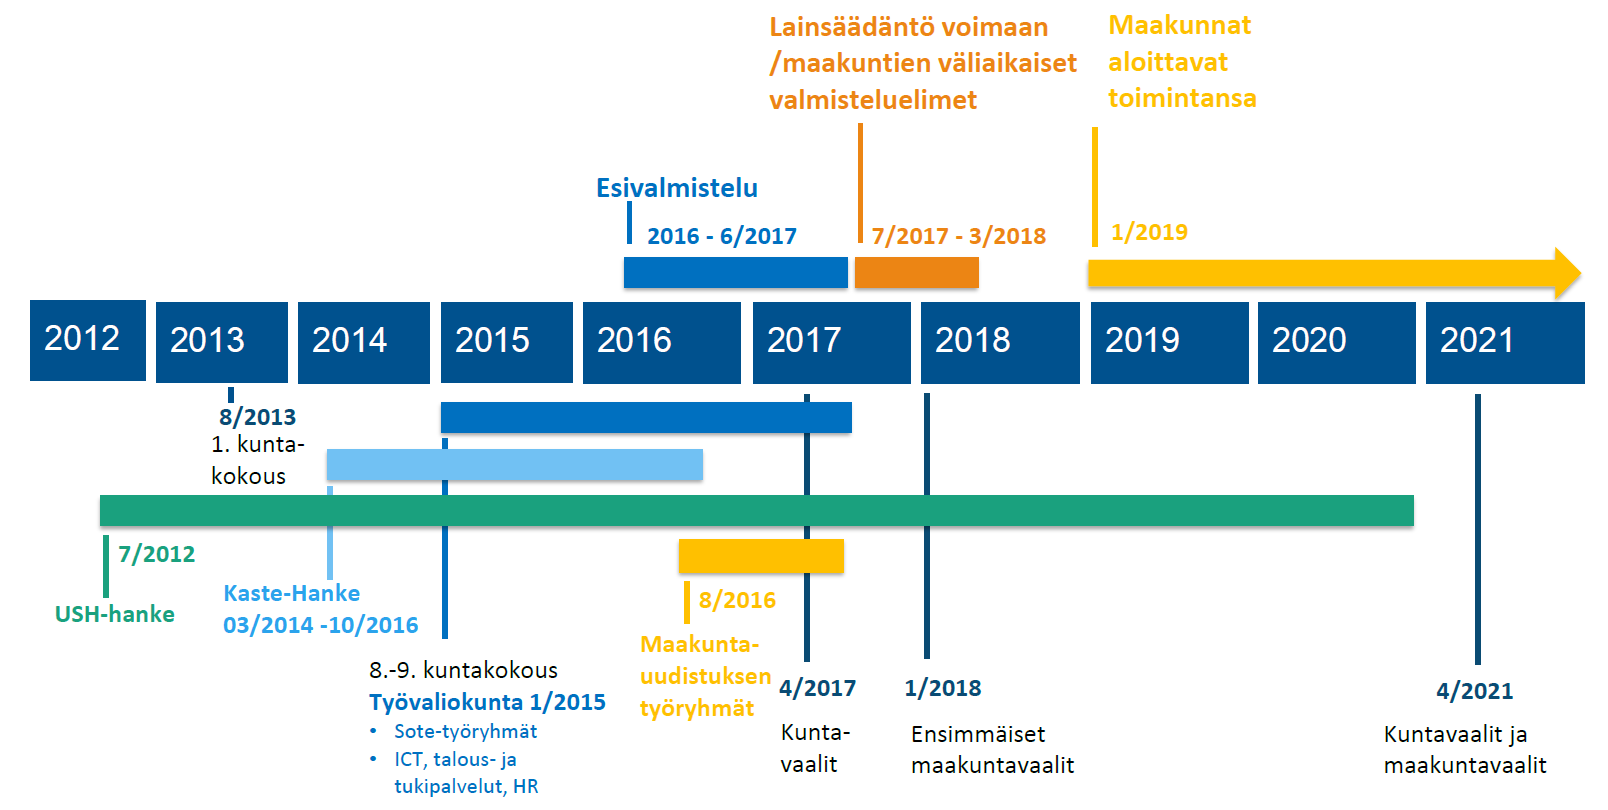 2. UUDISTUKSEN AIKATAULU Keski-Suomessa on jo useita vuosia haettu ratkaisumallia sosiaali- ja terveydenhuollon uuteen järjestämiseen ja tuottamiseen.